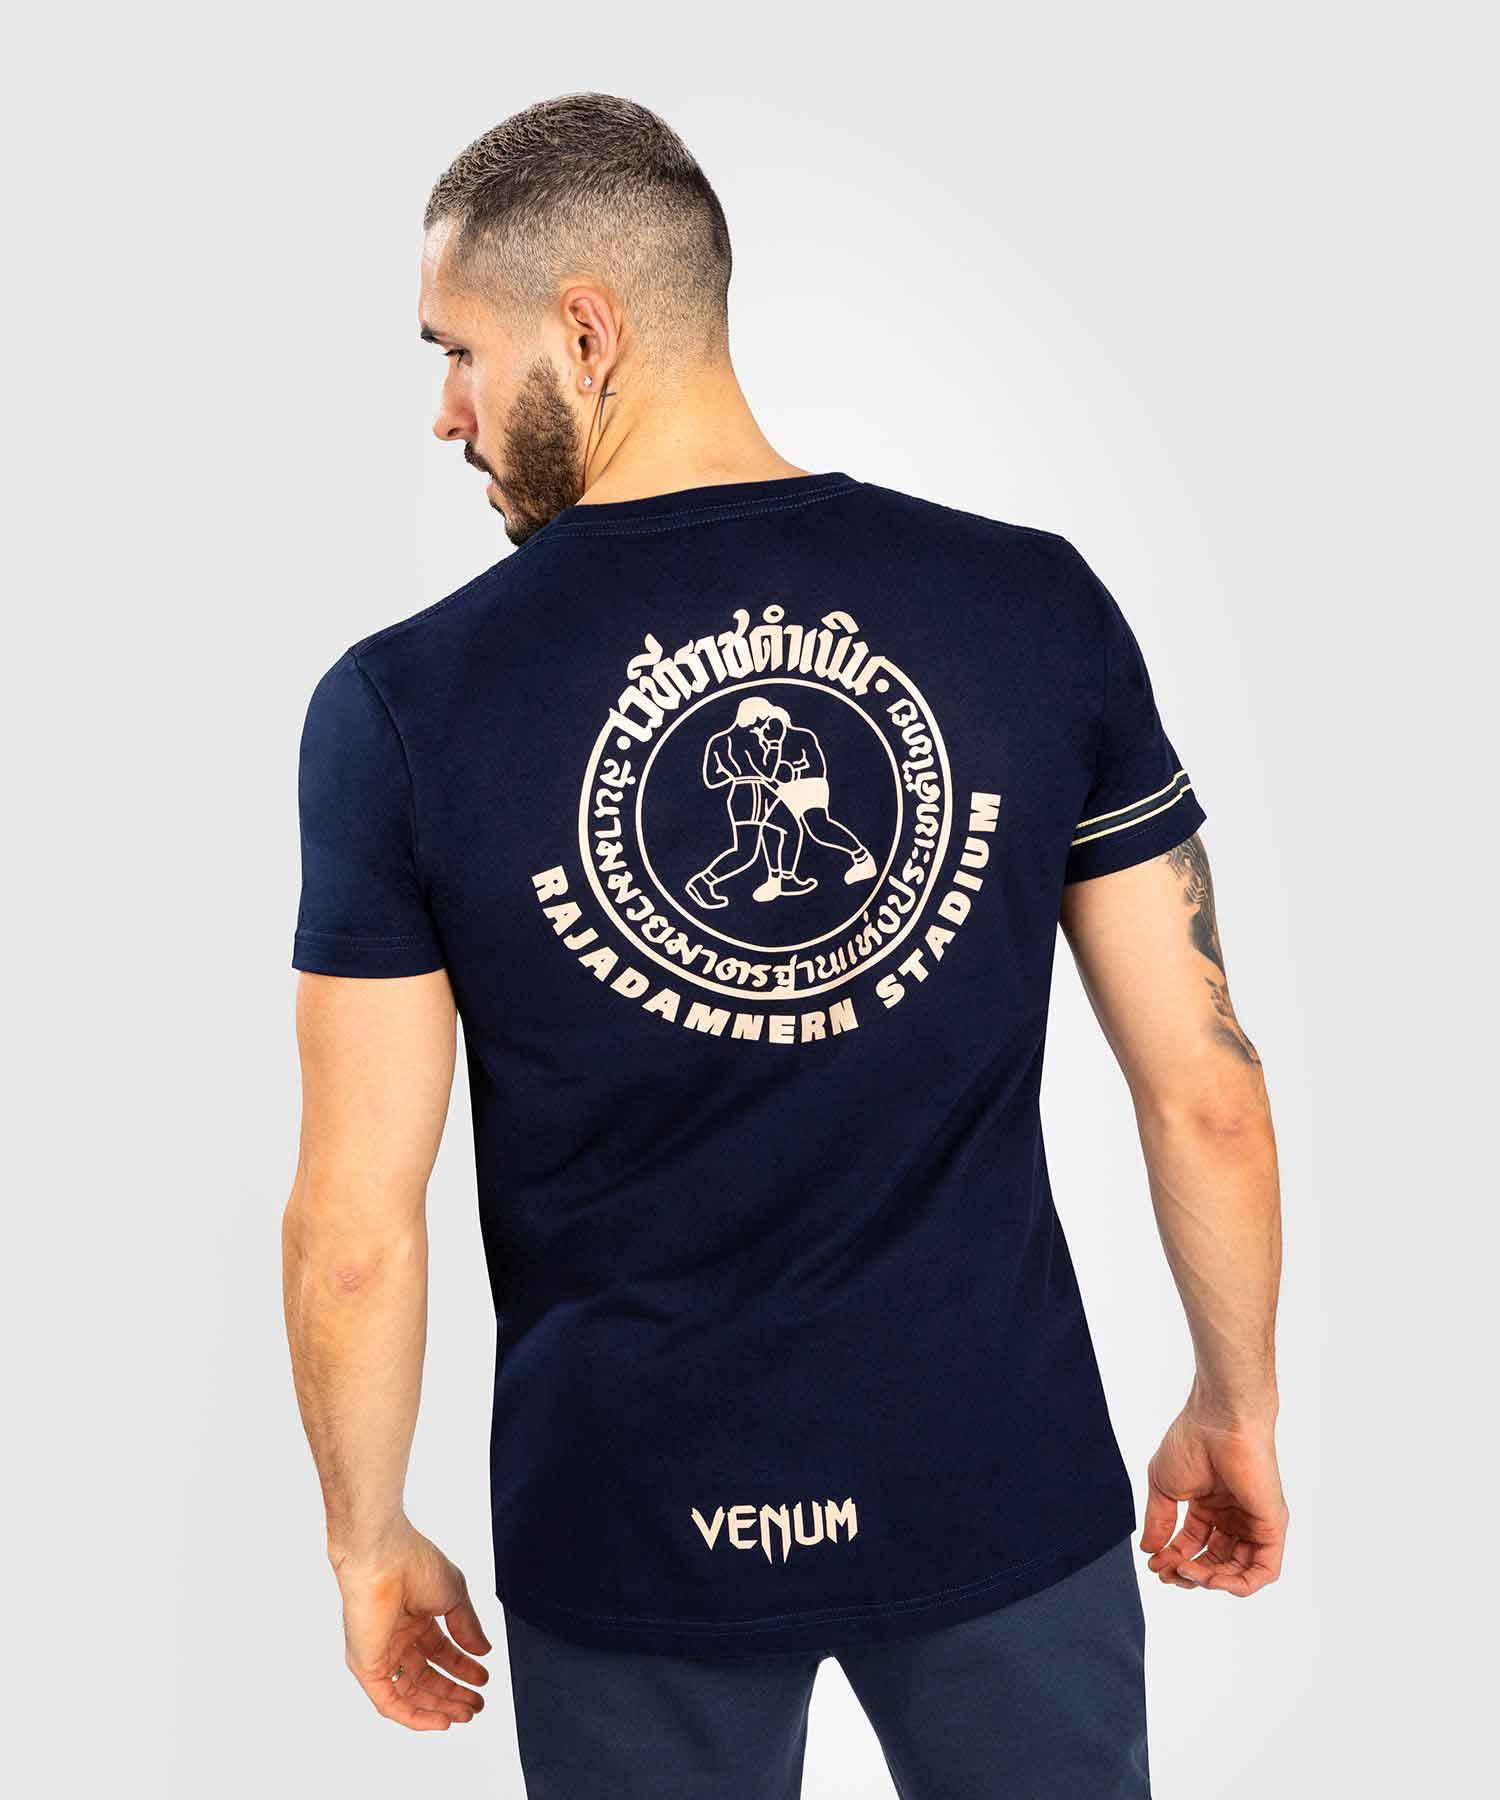 VENUM／ヴェナム　Tシャツ　　RAJADAMNERN X VENUM T-SHIRT／ラジャダムナン×ヴェナム Tシャツ（ネイビーブルー）